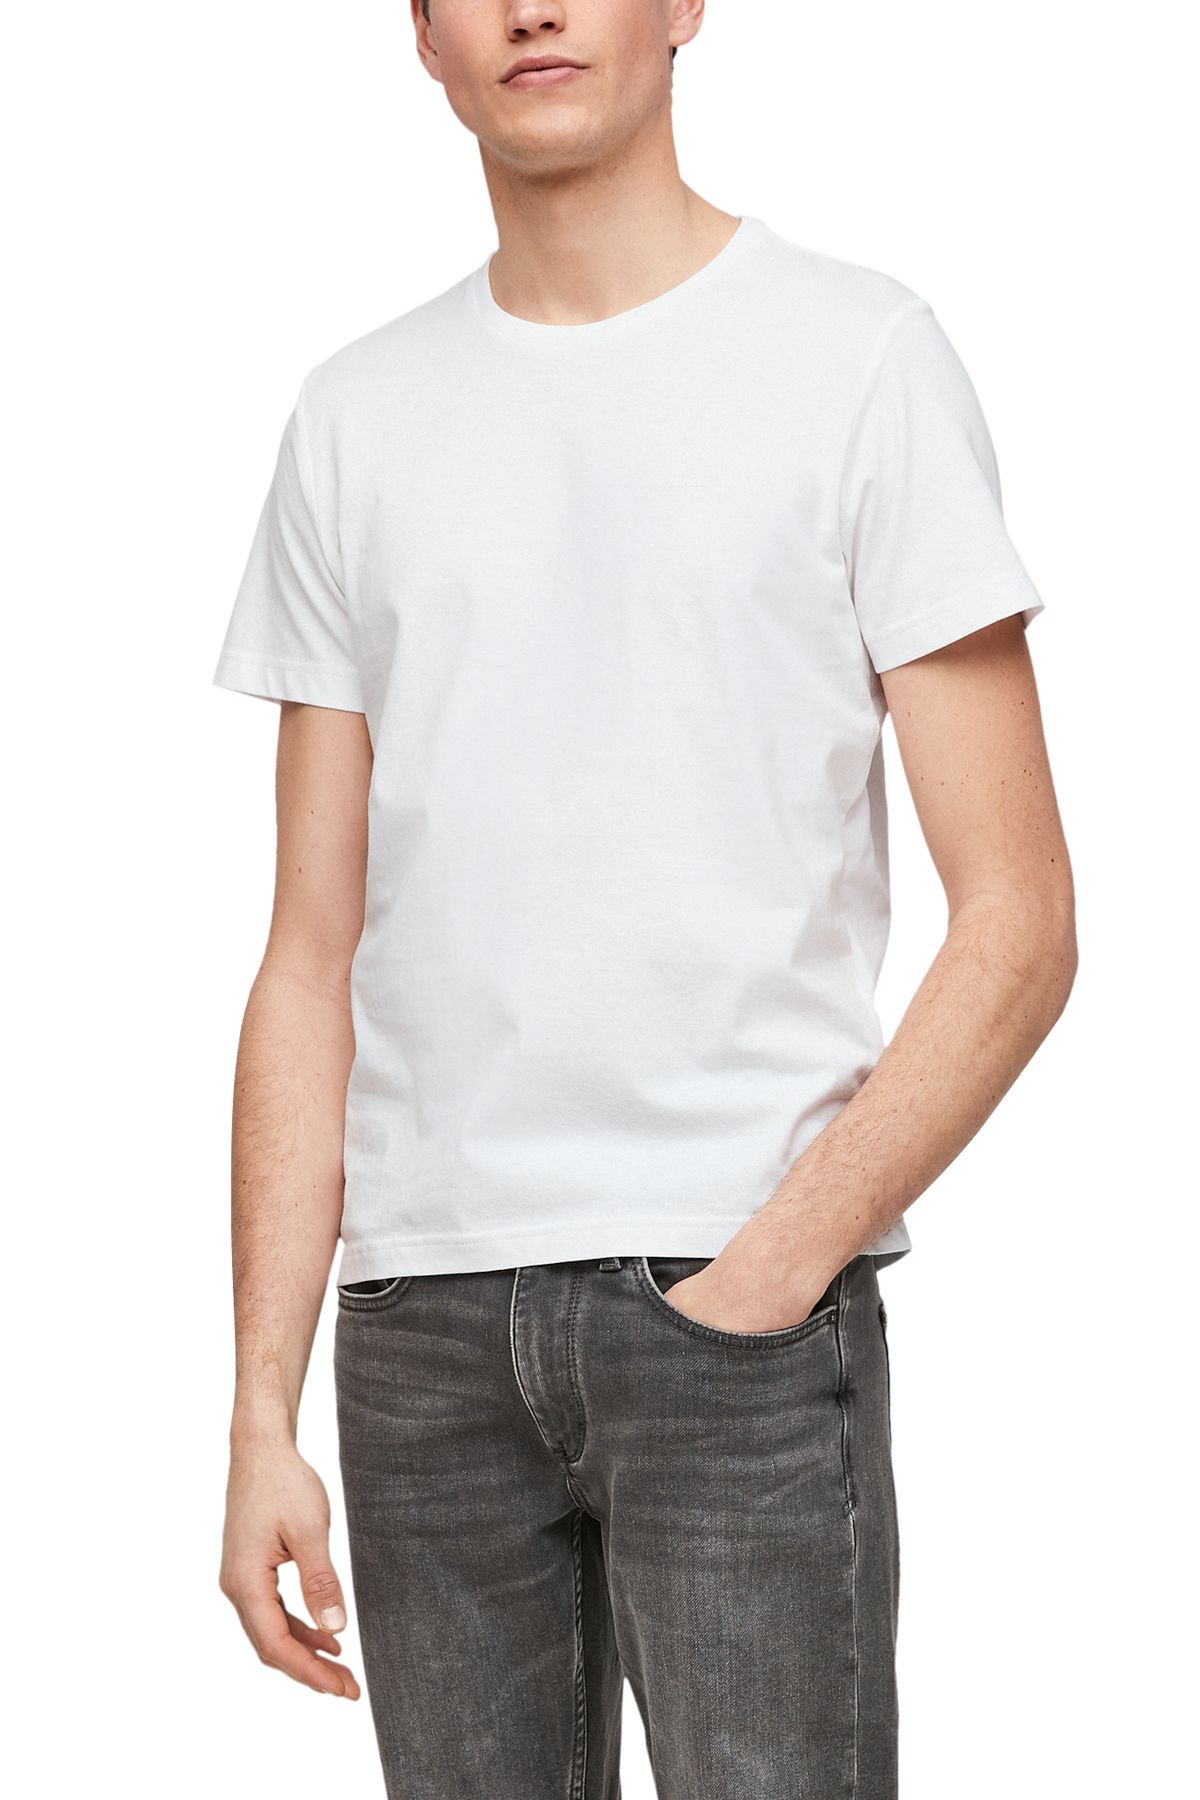 s.Oliver T-Shirt - Trendyol White Regular - fit 